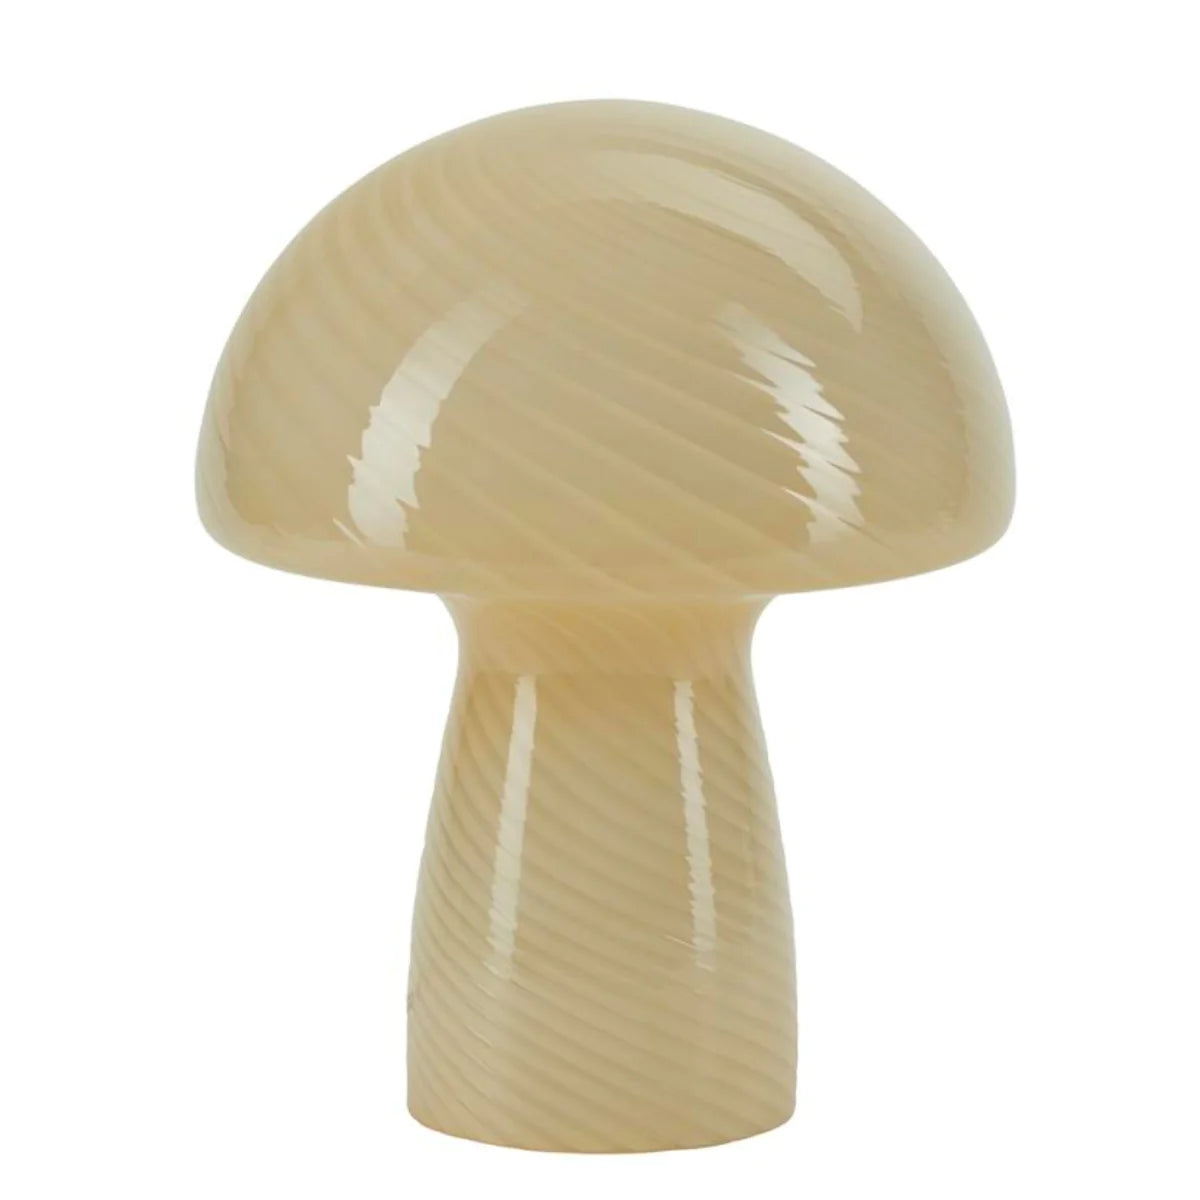 Bahne | Mushroom lampe - Large